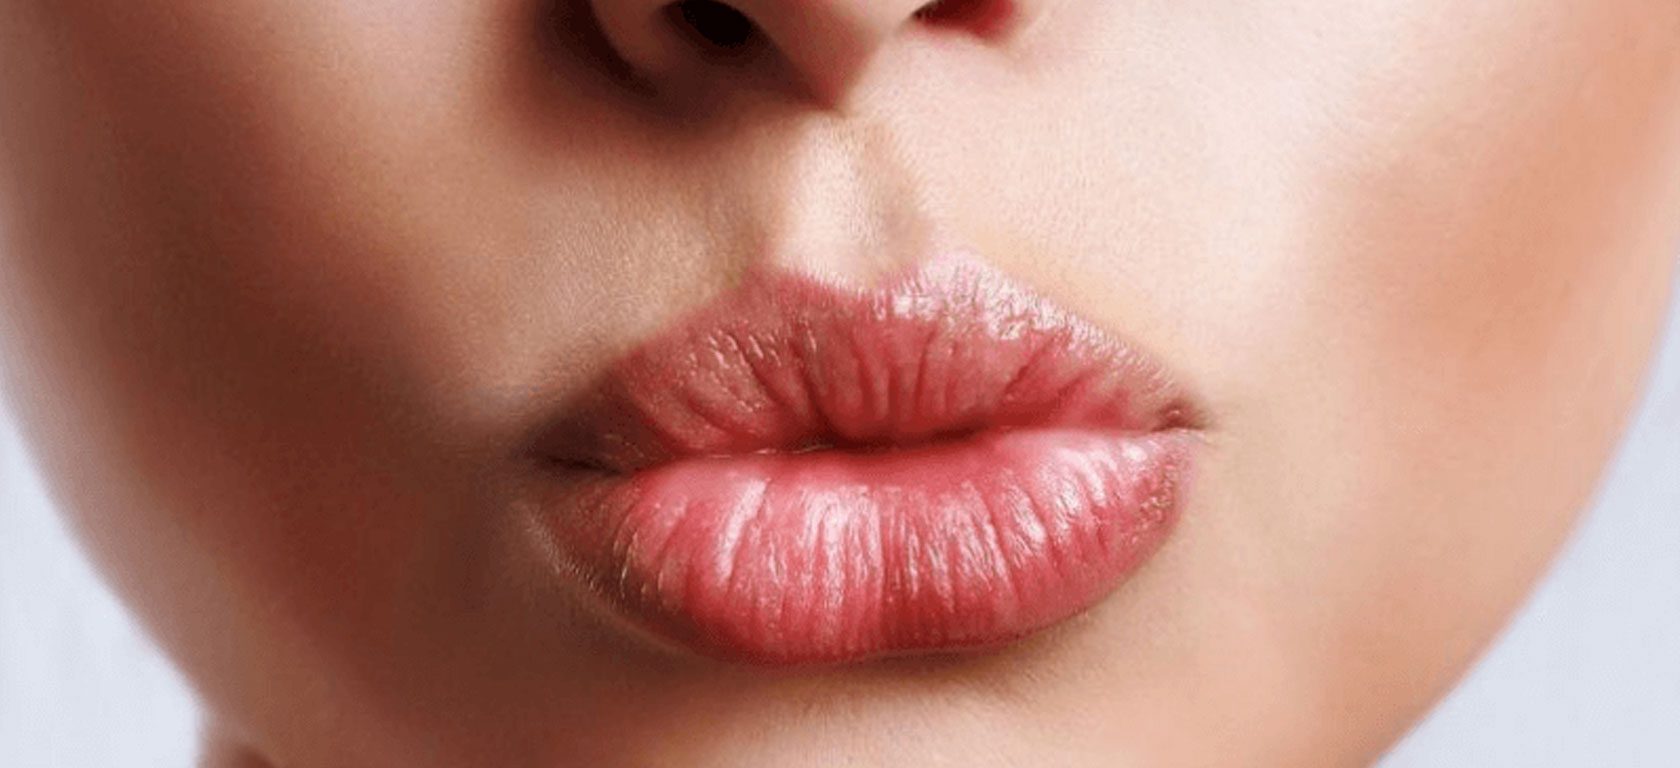 Imagen tratamiento aumento y relleno de labios